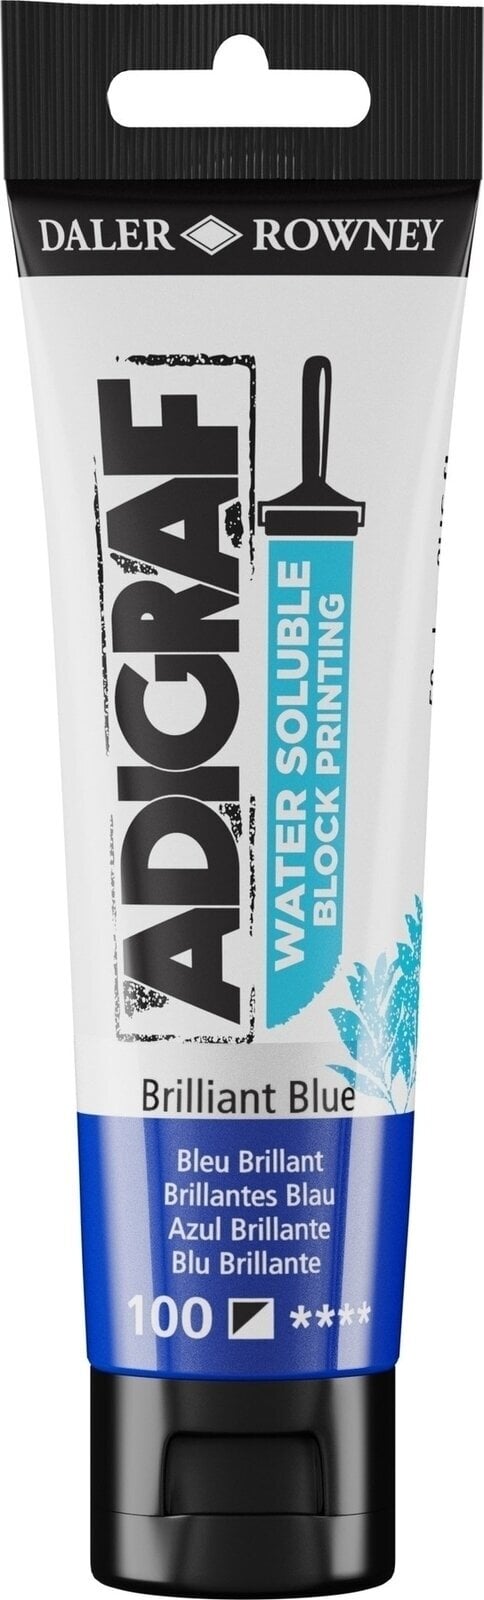 Verf voor linosnede Daler Rowney Adigraf Block Printing Water Soluble Colour Verf voor linosnede Brilliant Blue 59 ml